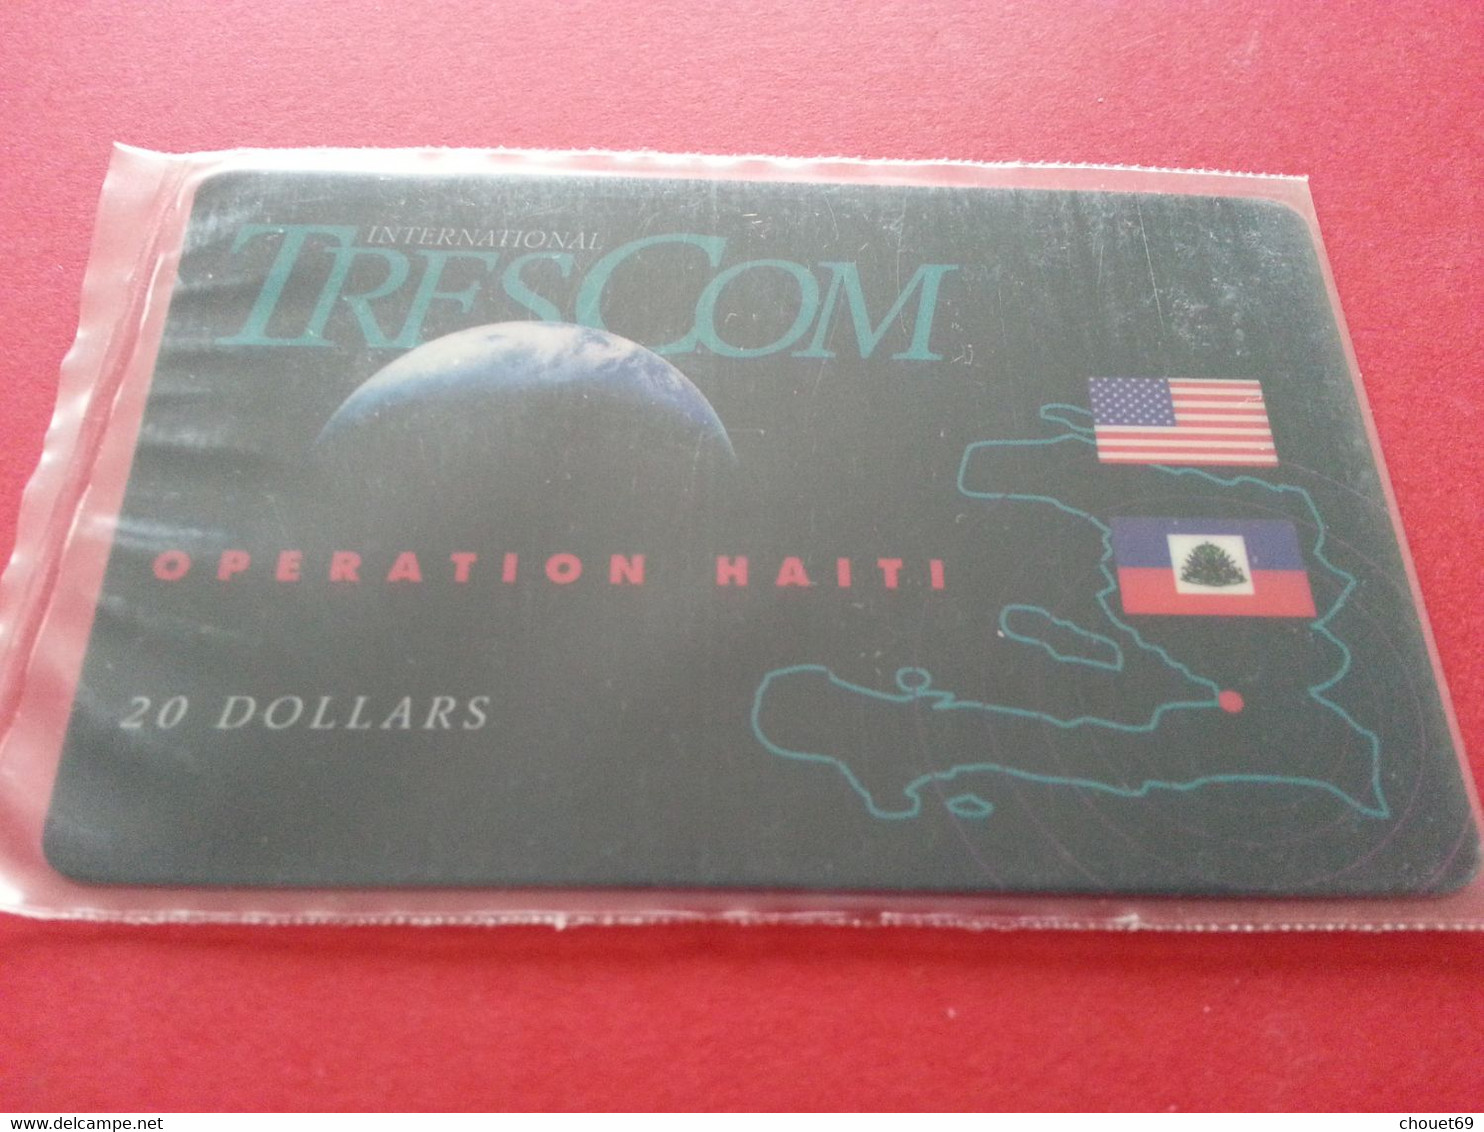 HAITI - HAI PA2 TRESCOM Blister OPERATION HAITI 20 USD Dollars MINT NSB 4/97 Army Militaria (TH0320 - Haiti